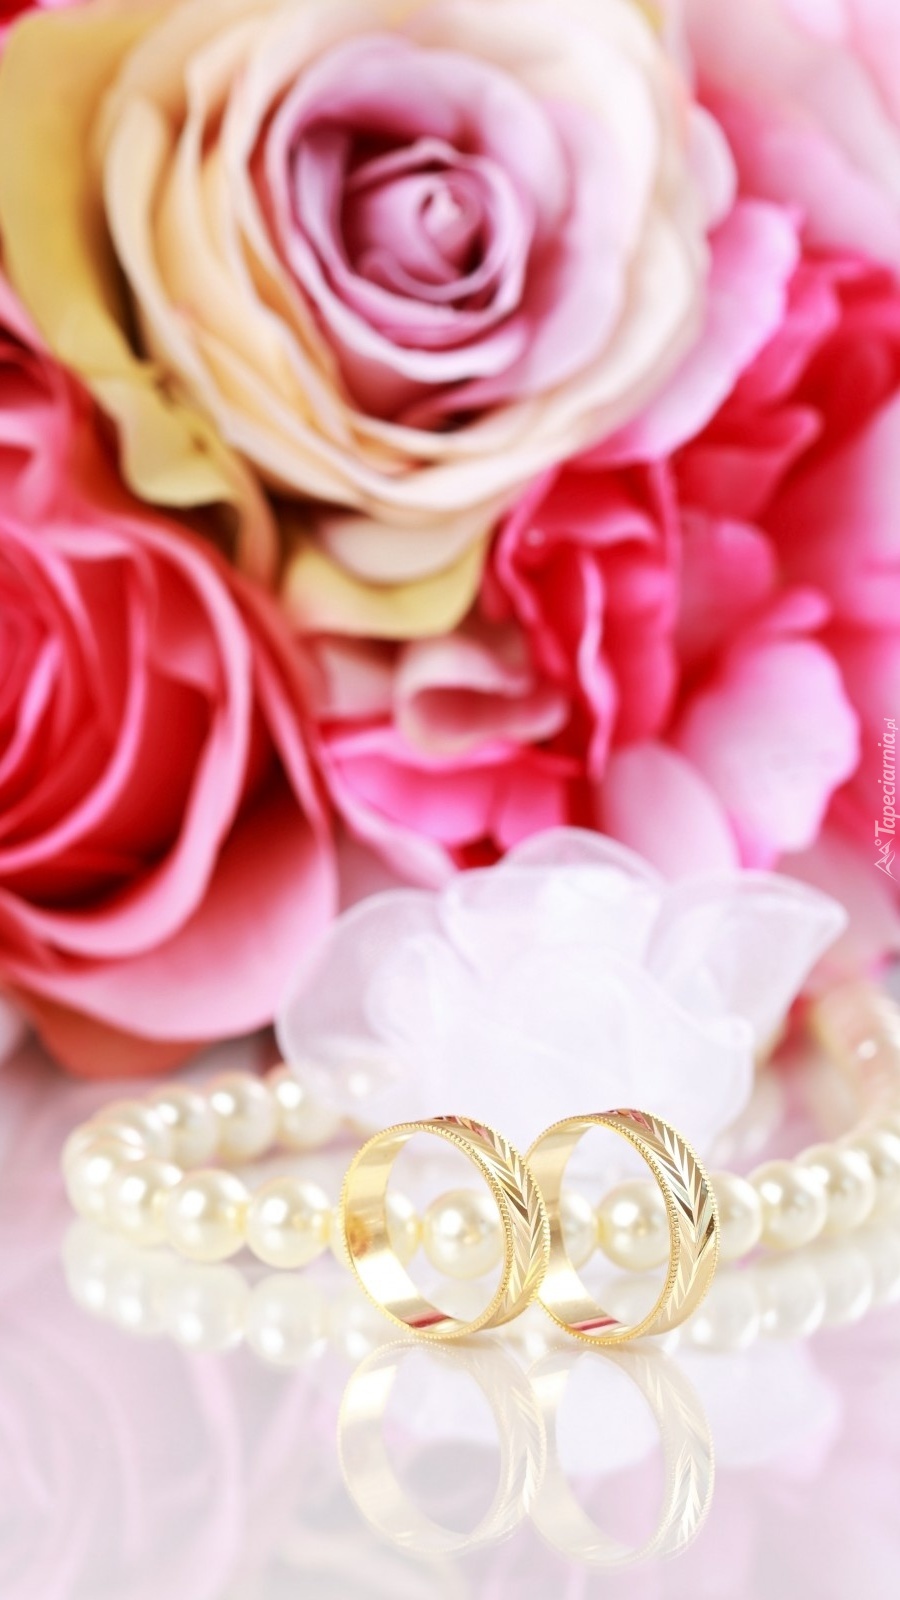 Złote obrączki obok pereł i róż